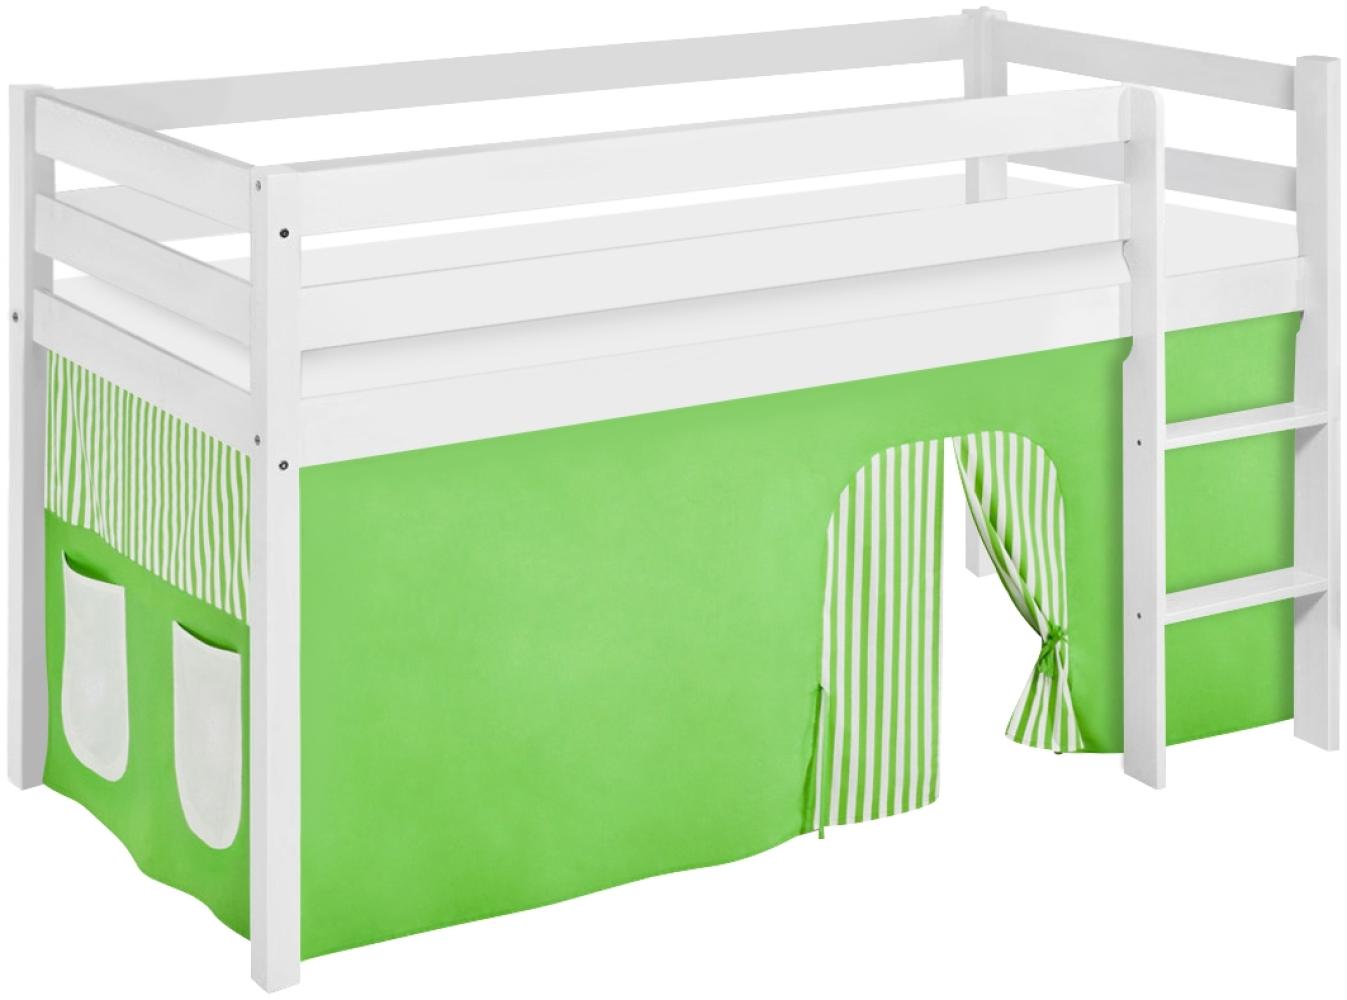 Lilokids 'Jelle' Spielbett 90 x 190 cm, Grün Beige, Kiefer massiv, mit Vorhang Bild 1